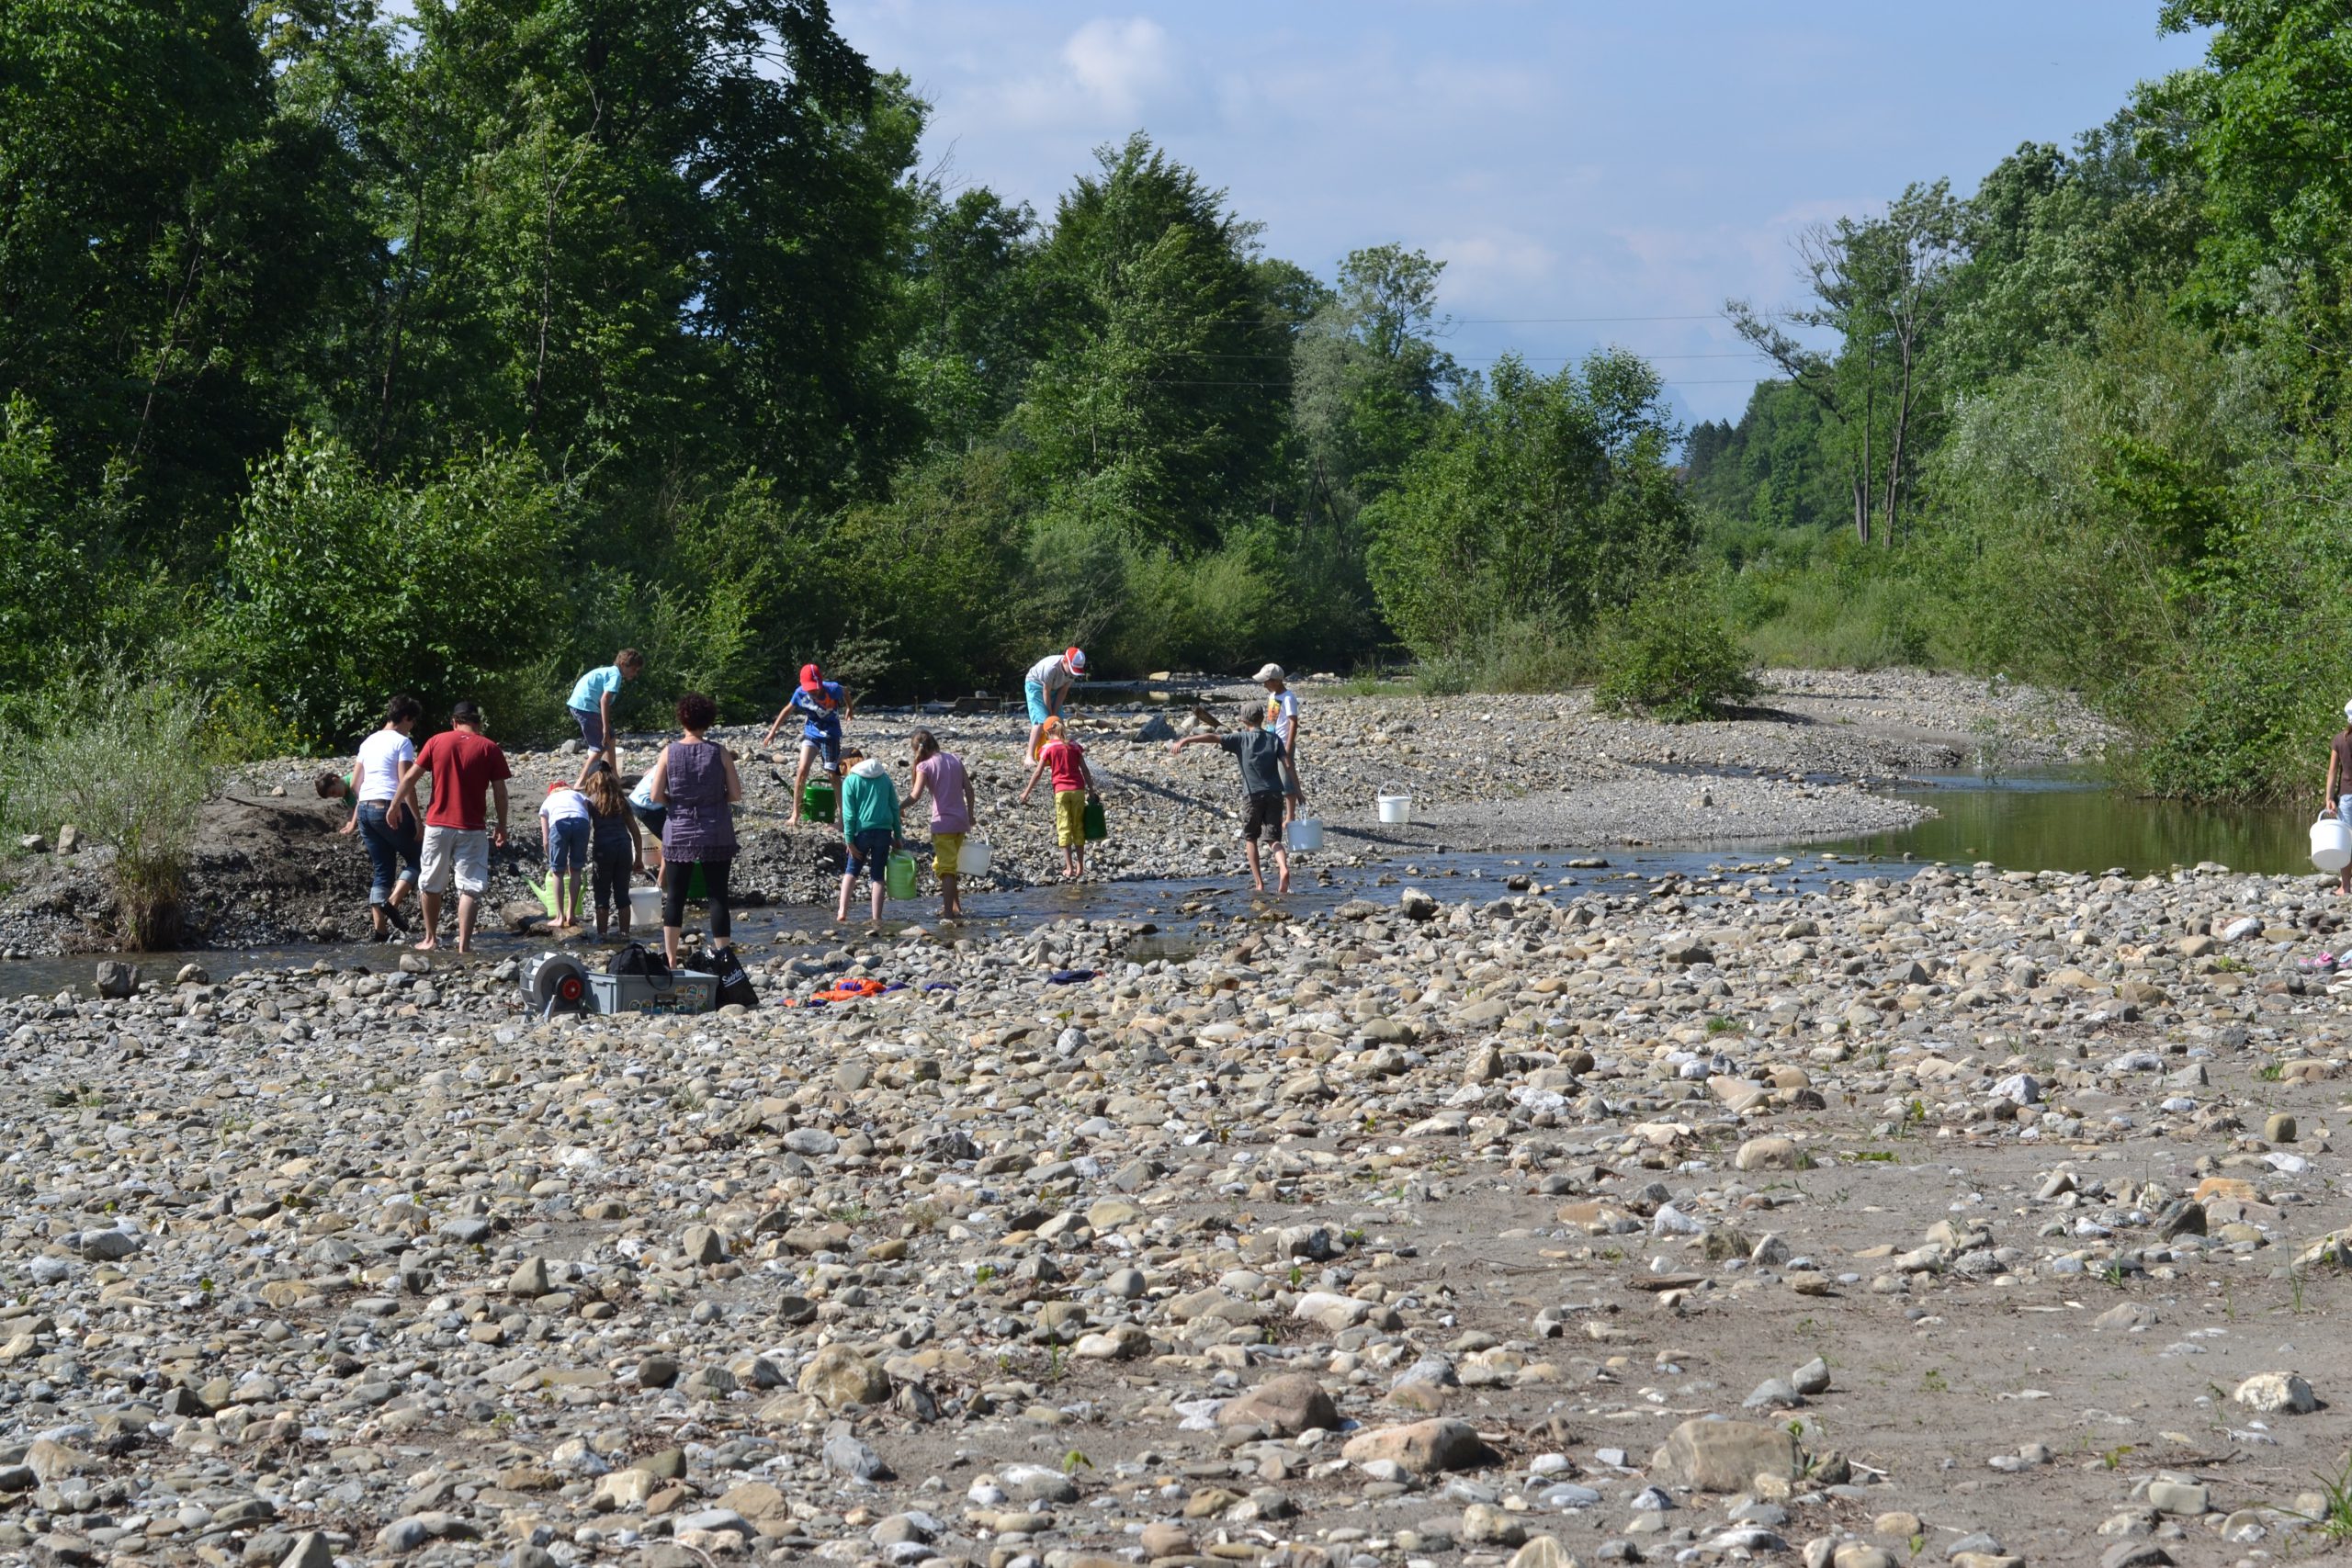 Schulkinder mit Eimern im Flussbett